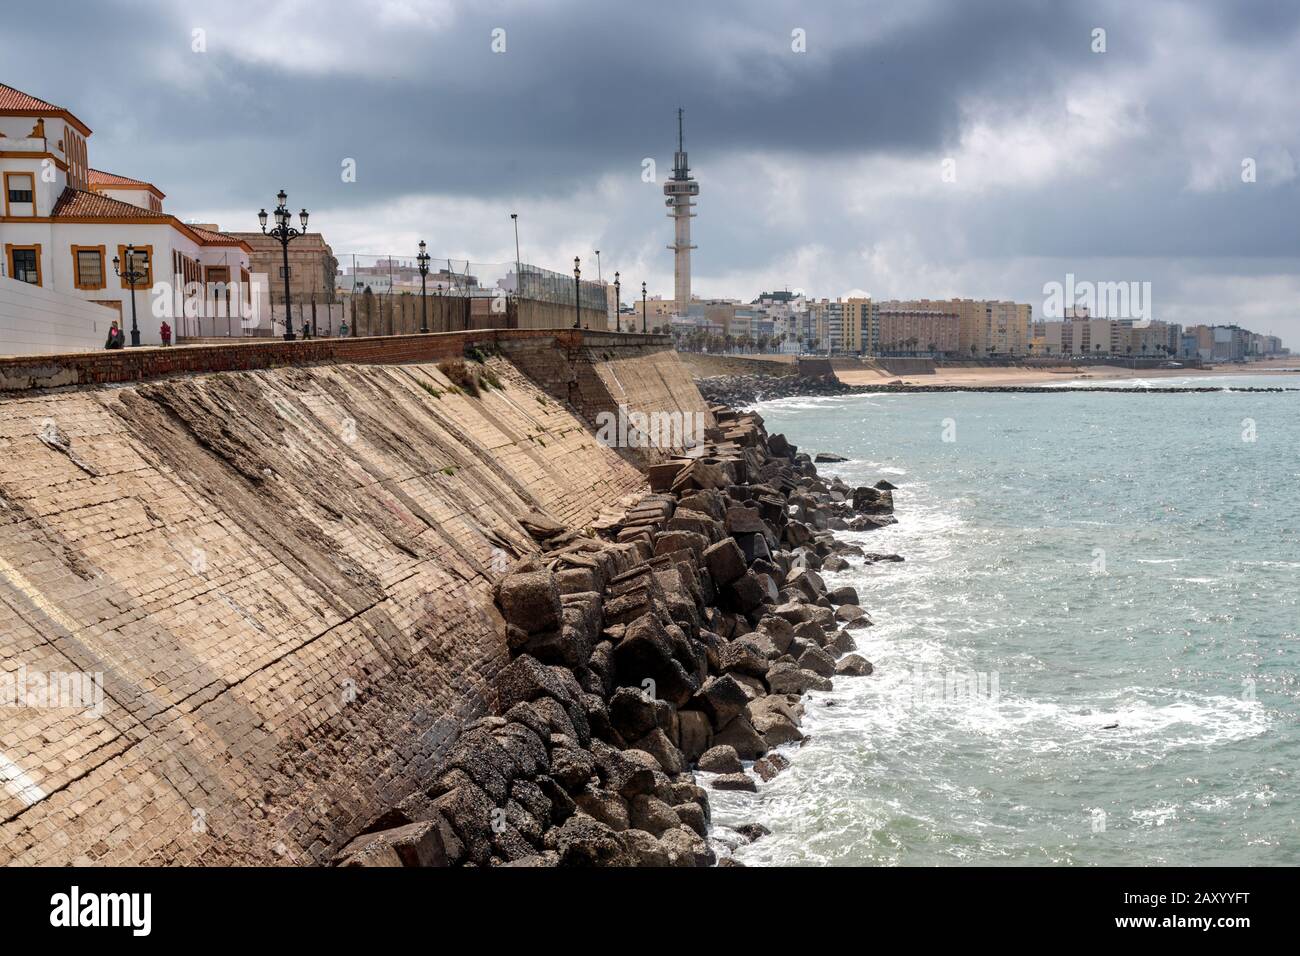 Vue sur le front de mer et les défenses des murs de la mer, promenade Campo del sur, Cadix, Andalousie, Espagne. Banque D'Images